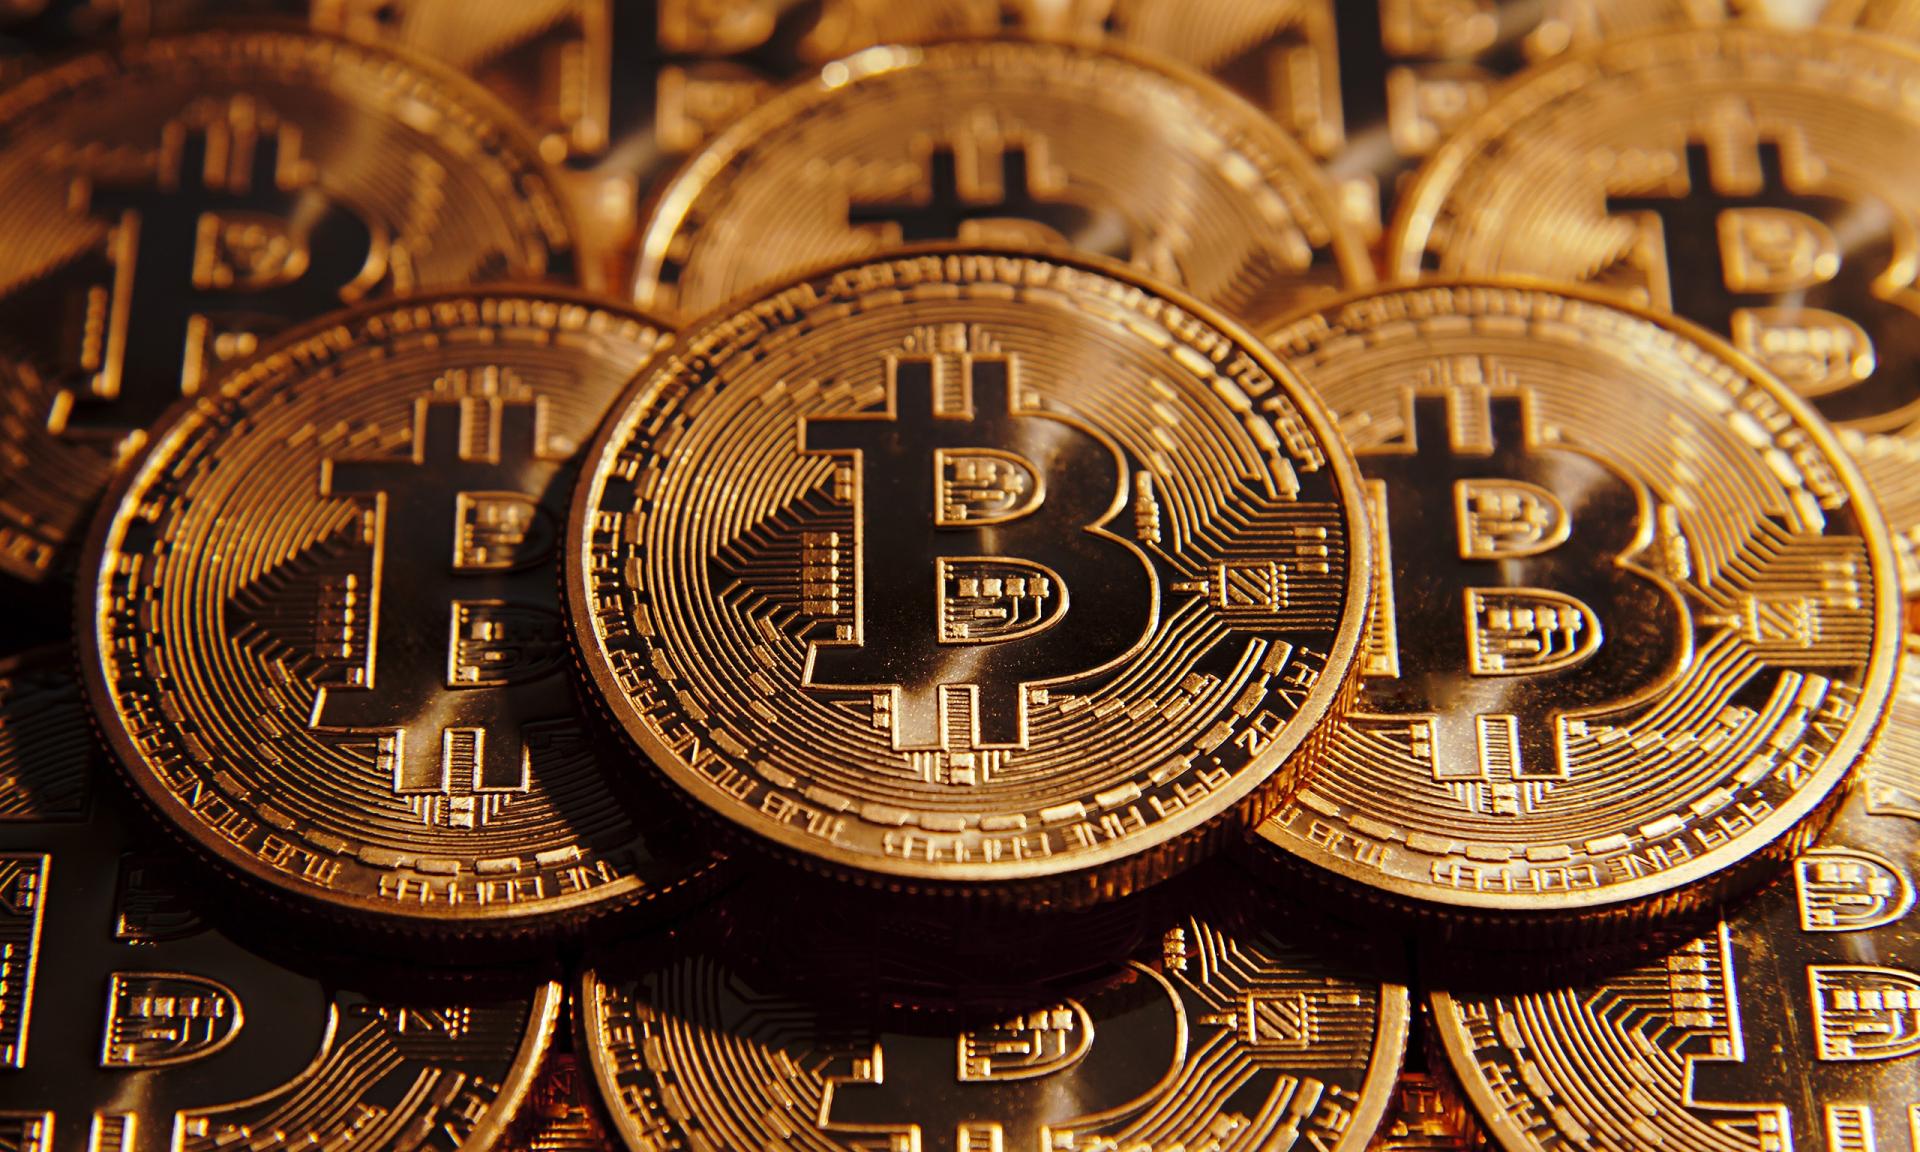 Kriptovalyuta bazarı dəyişdi - Bitkoin 10 min dolları keçdi